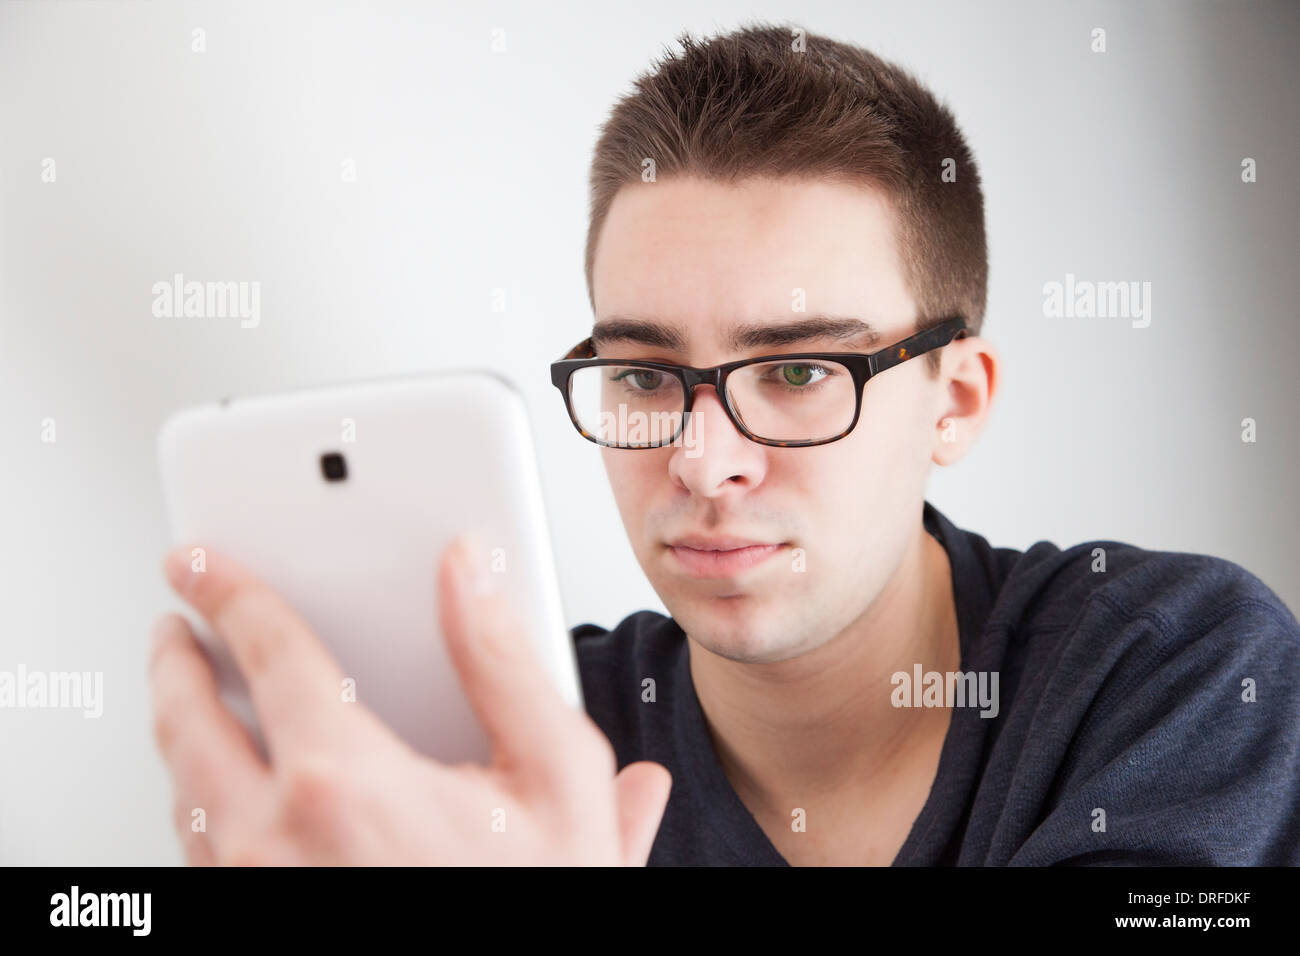 Buona ricerca giovane con gli occhiali, tenendo in mano un bianco digitale compressa. Espressione seria. Foto Stock